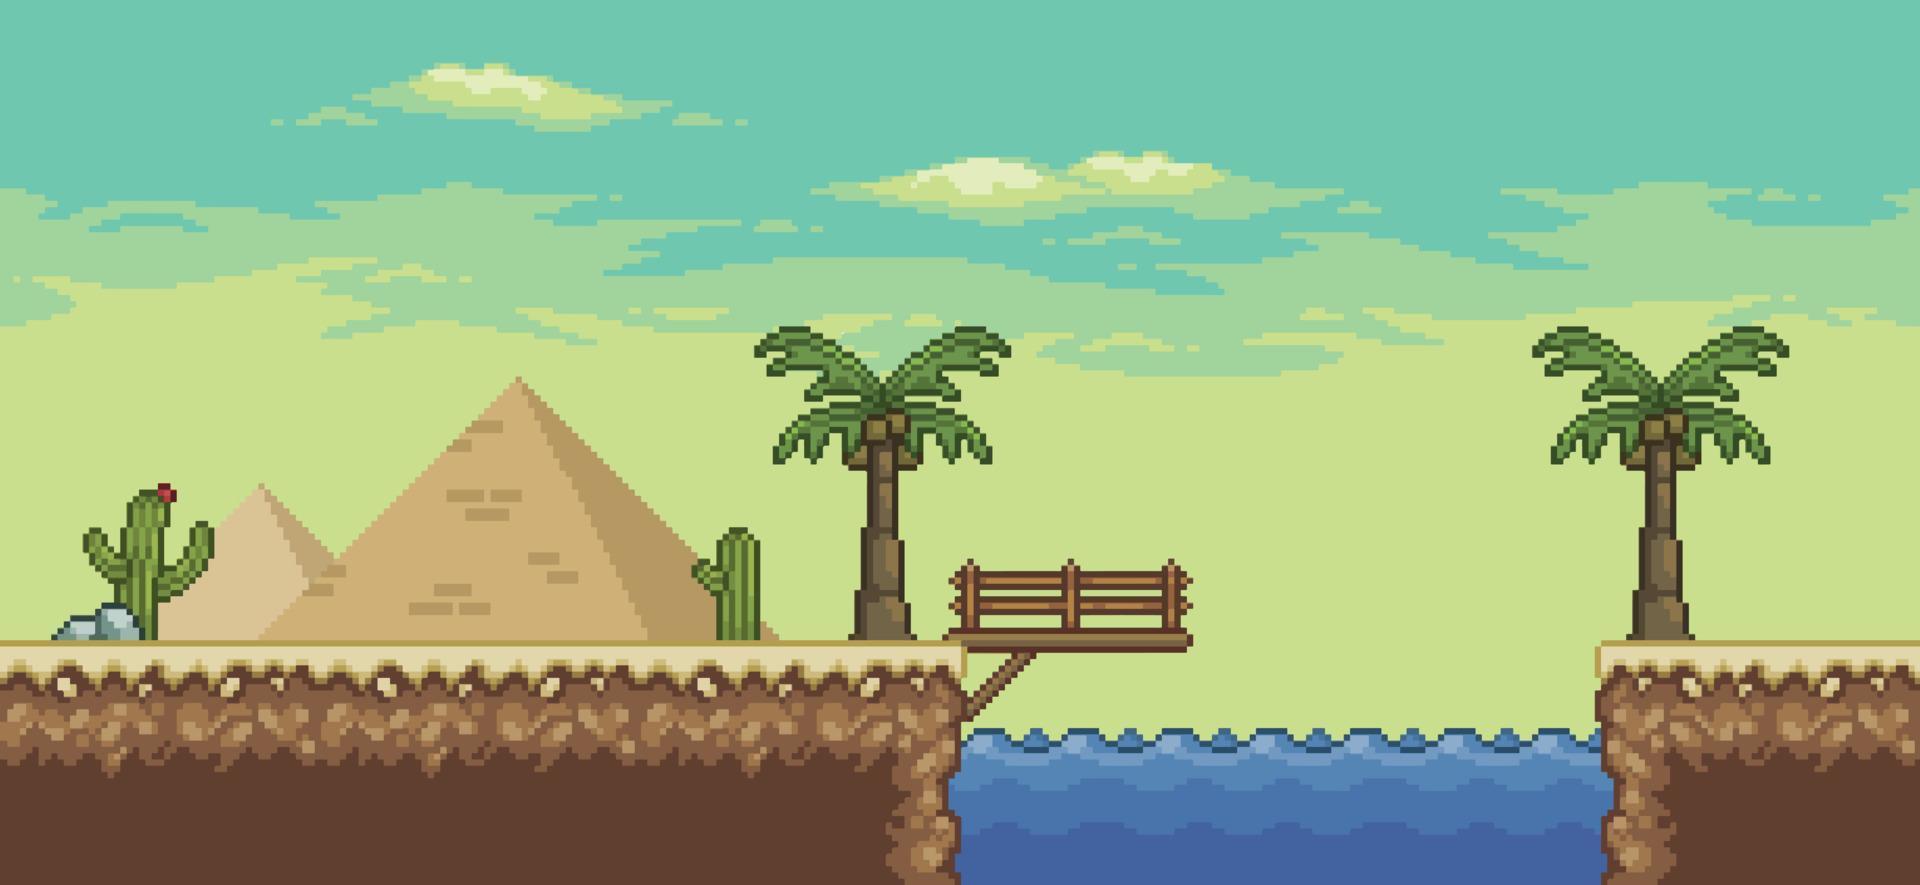 Pixelkunst-Wüstenspielszene mit Pyramide, Oase, Brücke, Palme, Kakteen, Richtungstafel 8-Bit-Hintergrund vektor